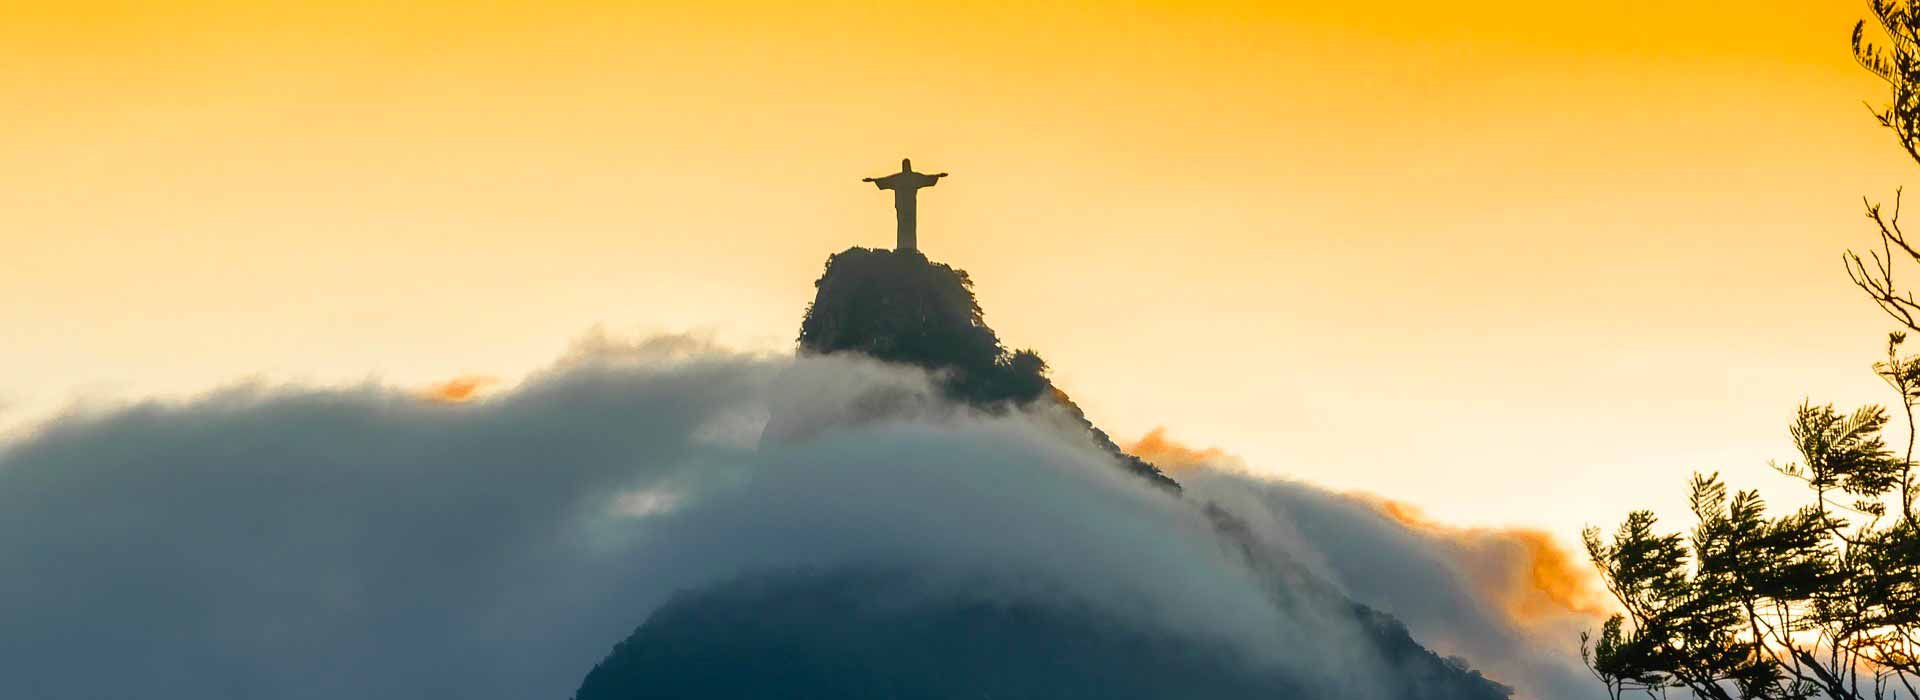 Brasile: Dopo un 2018 debole, per il 2019 bisogna attendersi una revisione delle attese nel corso dell’anno